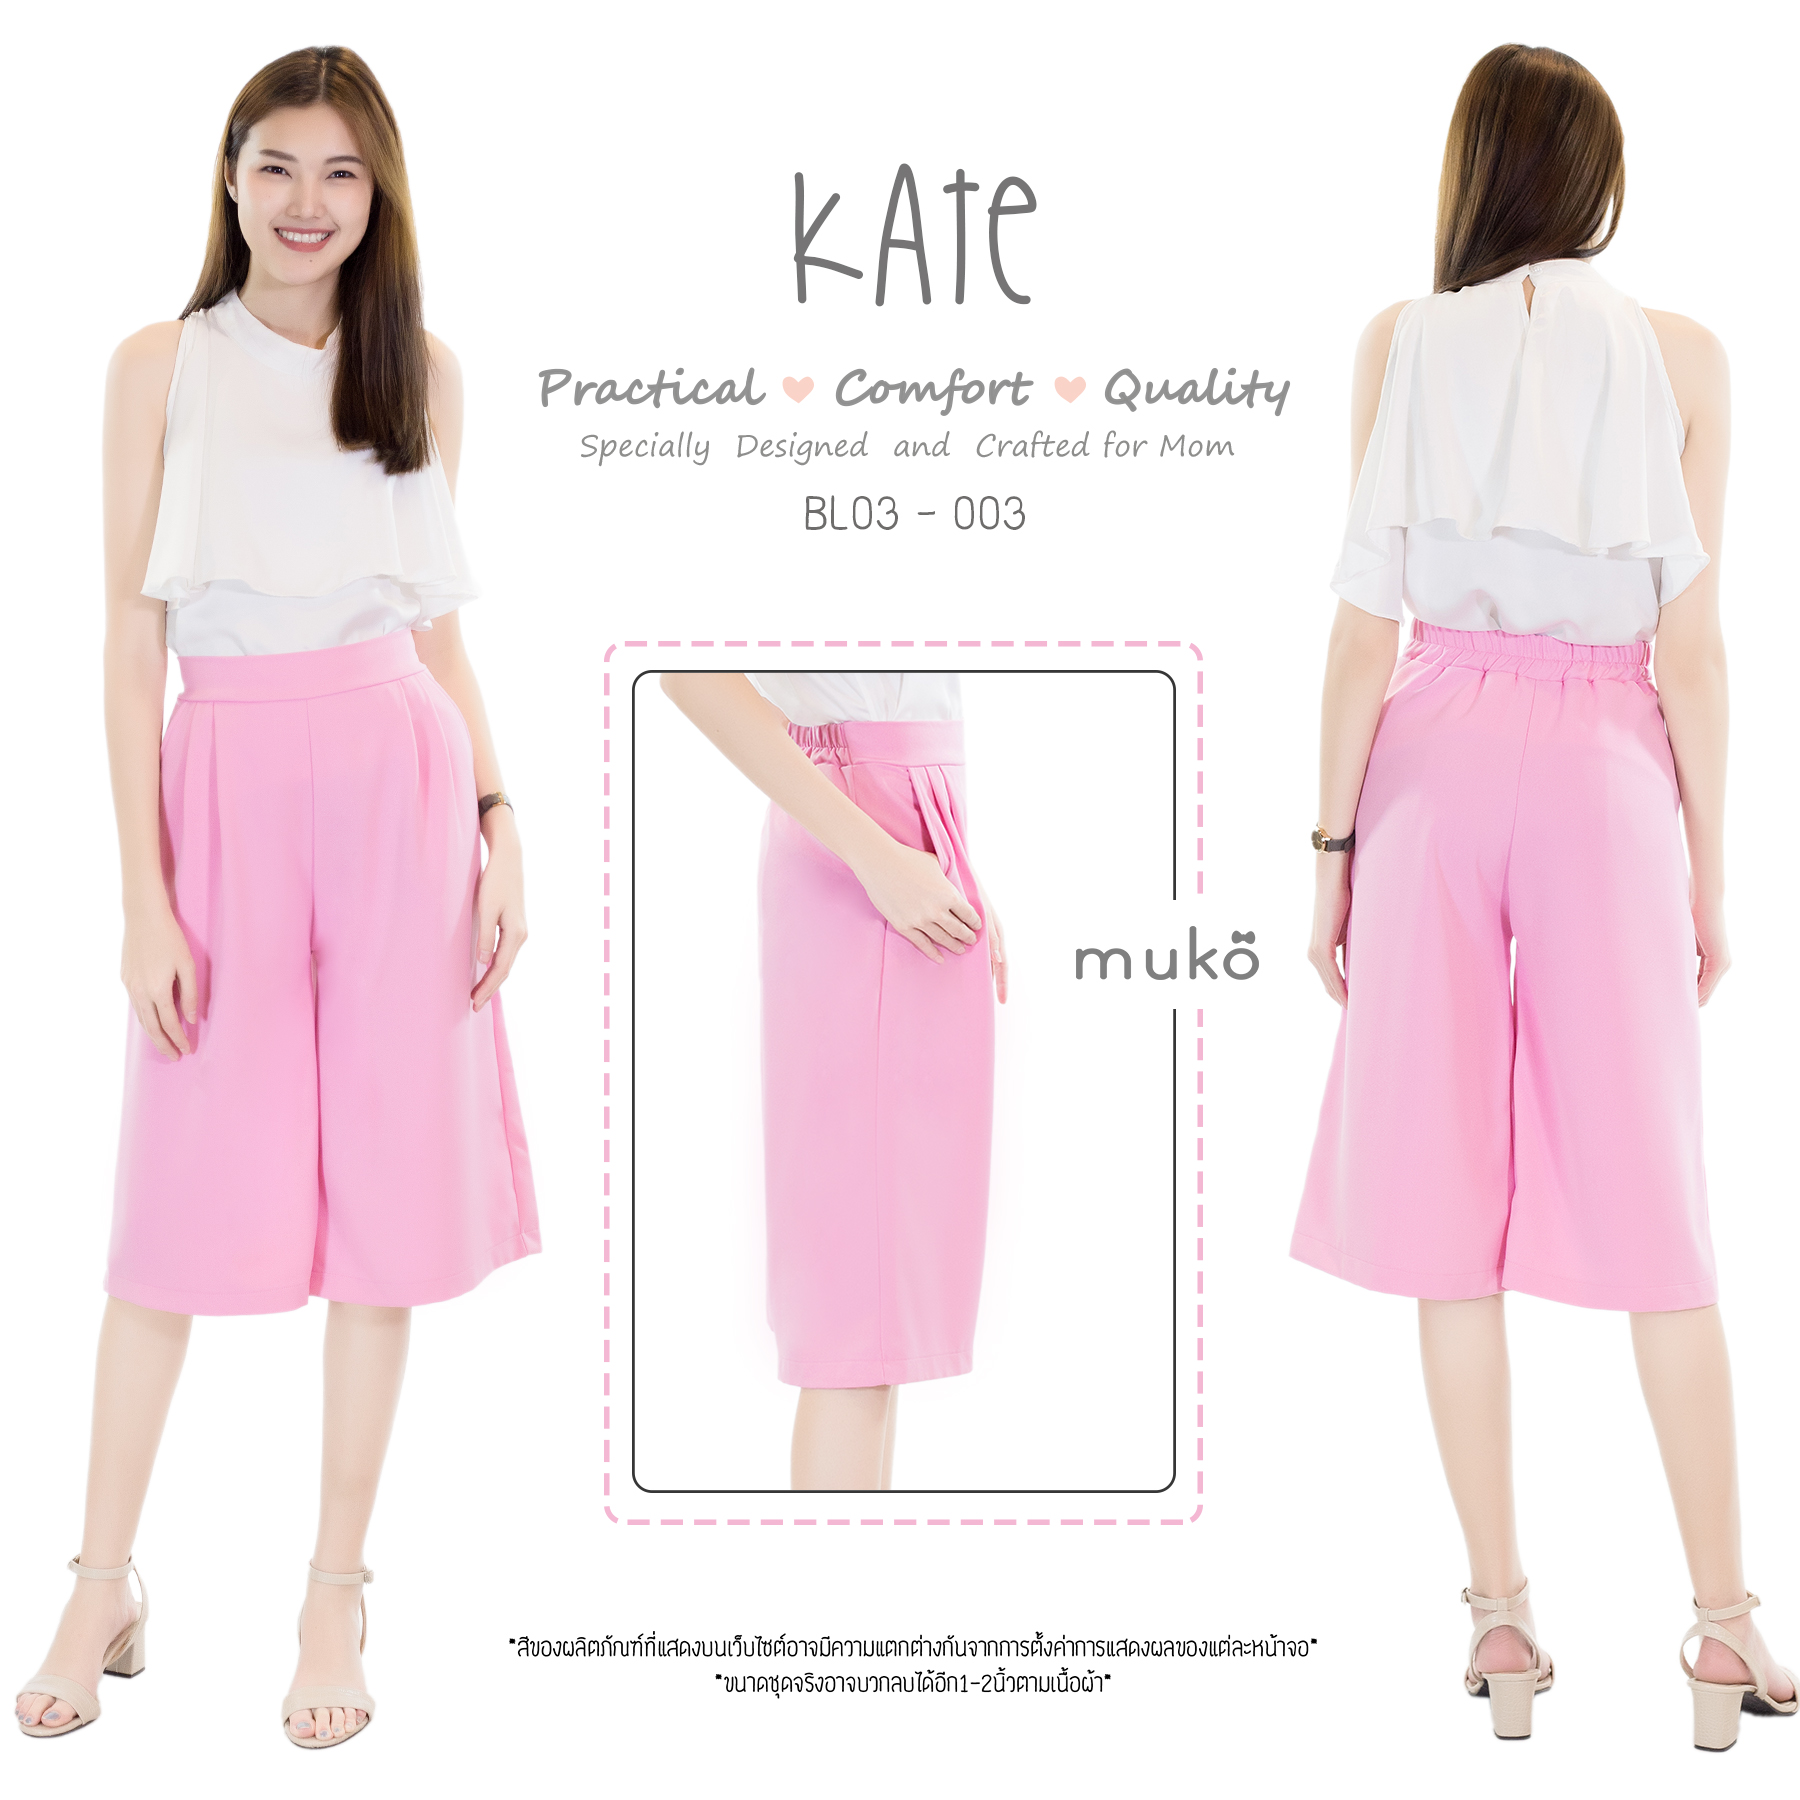 Muko Kate กางเกง (หลังคลอด) กางเกง 4 ส่วน BL03-003 สีชมพู